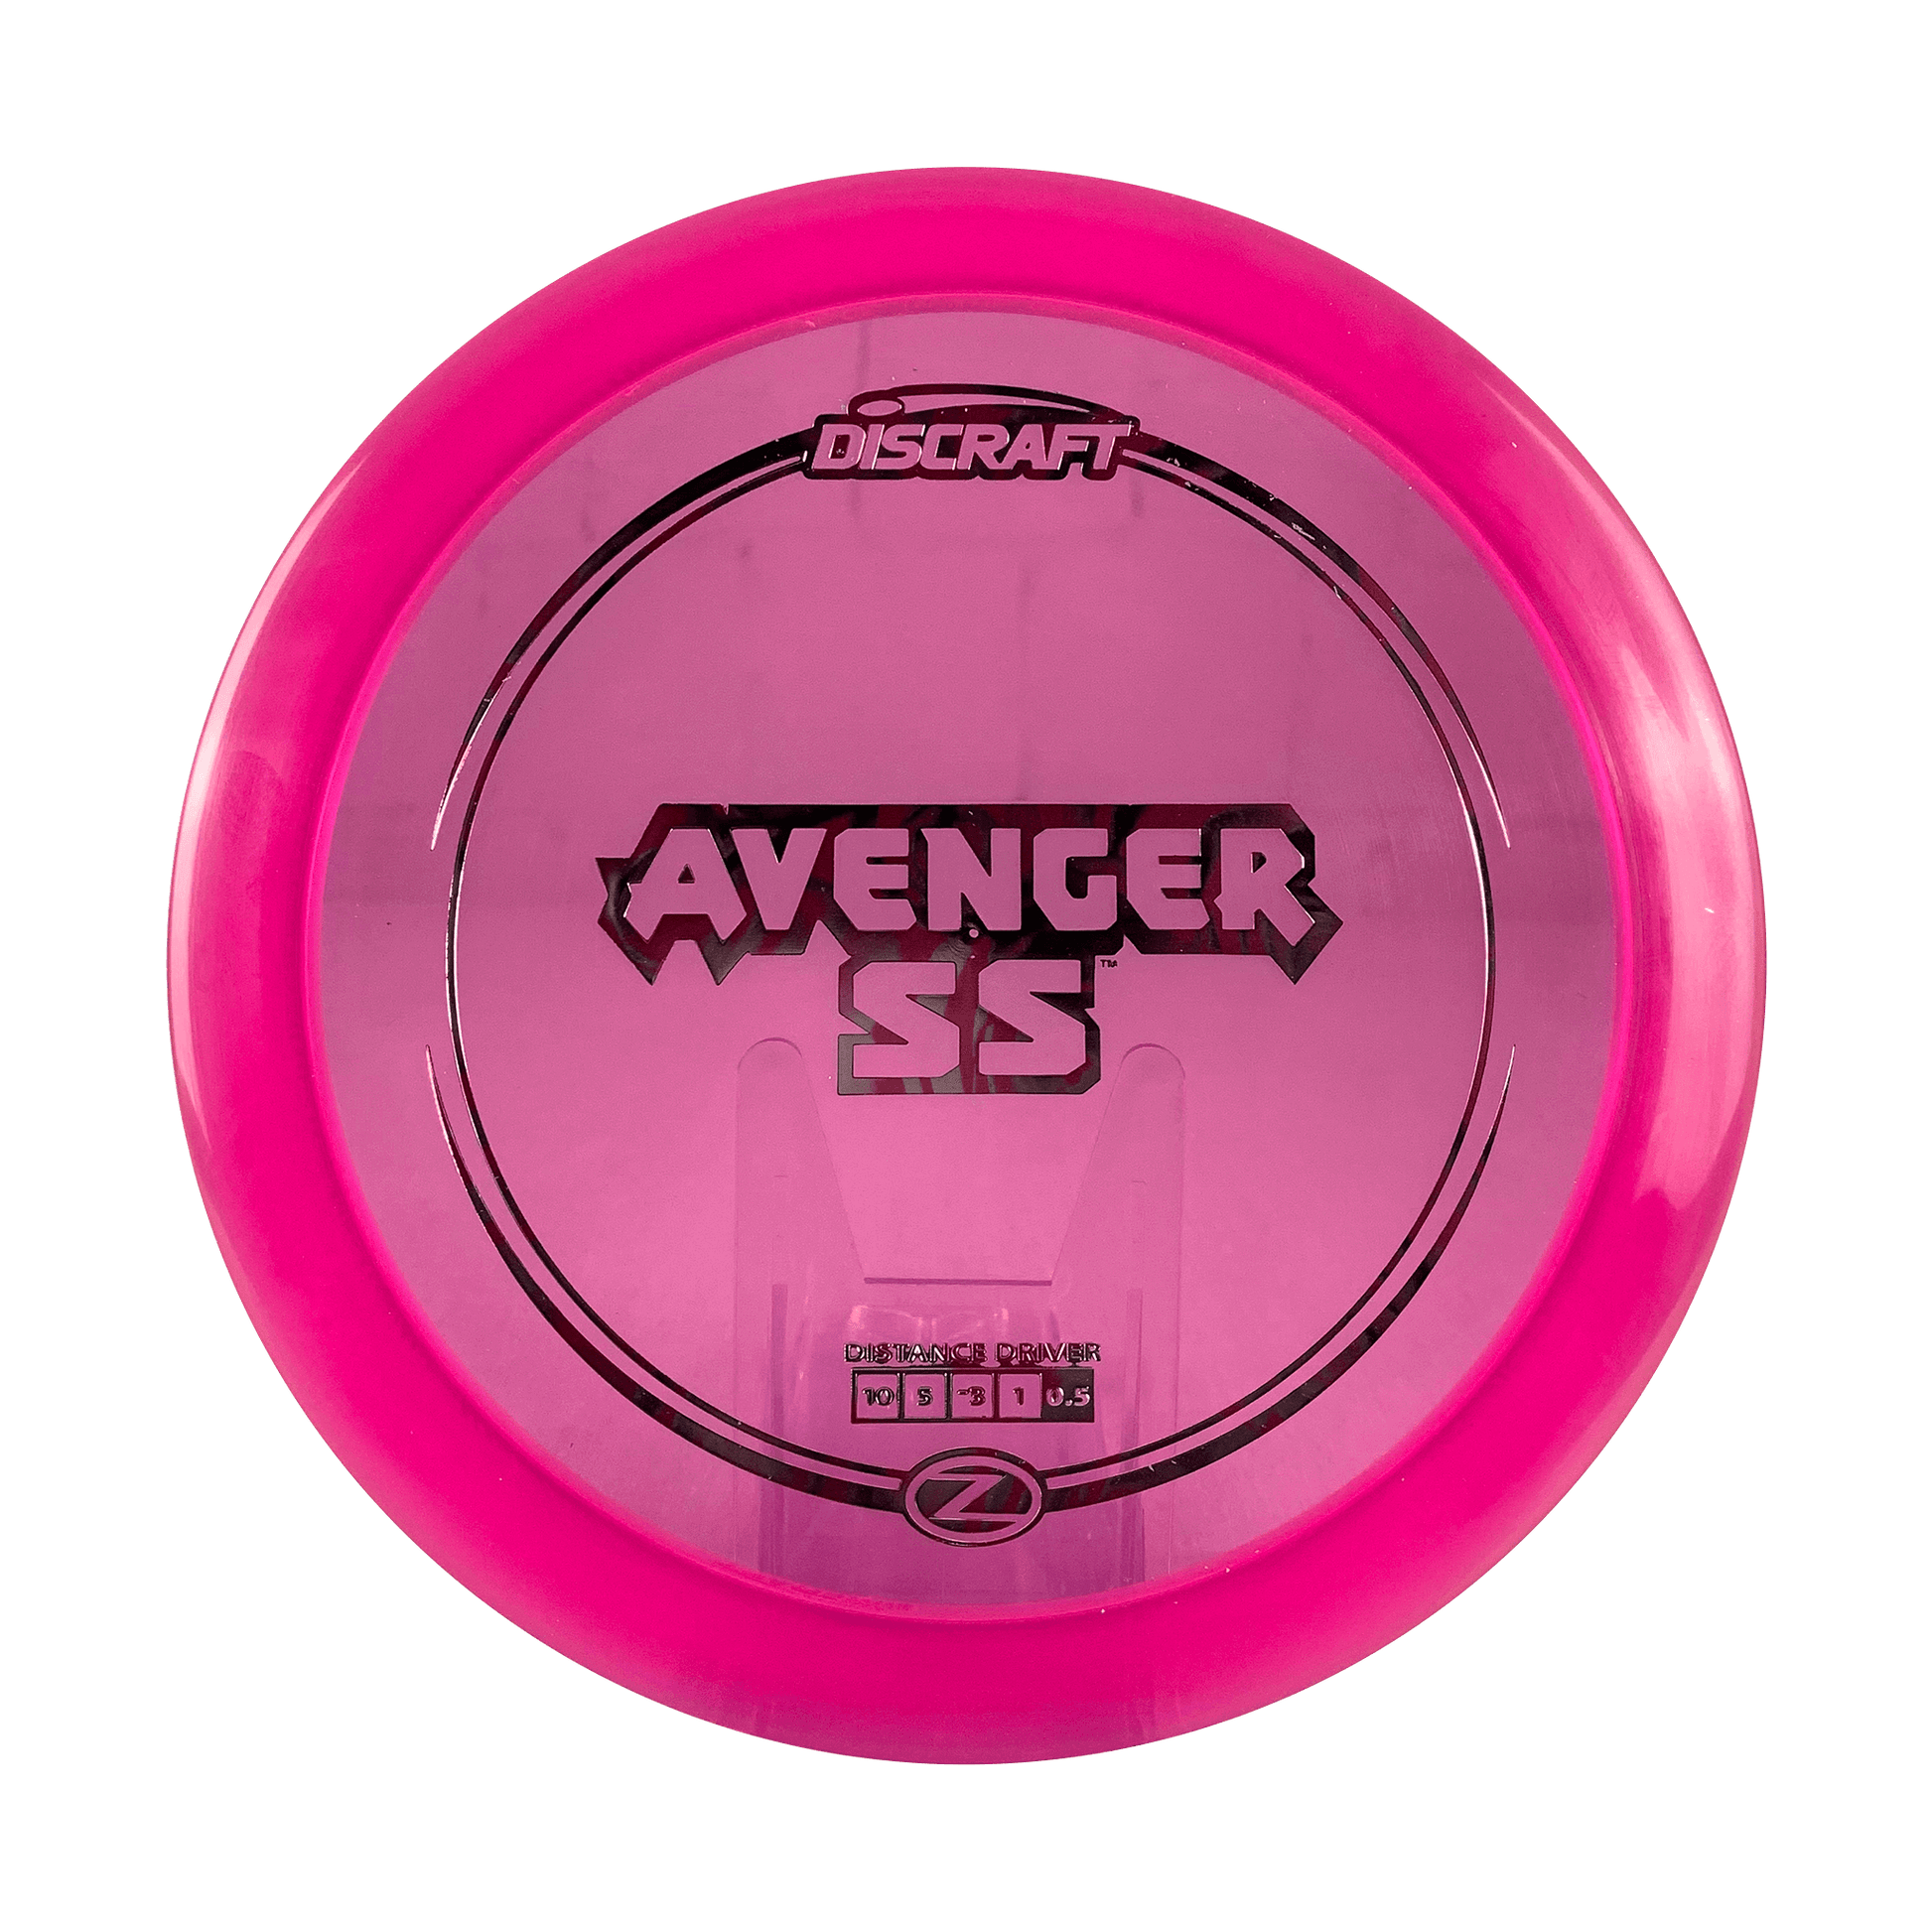 Z Avenger SS Disc Discraft clear pink 173 